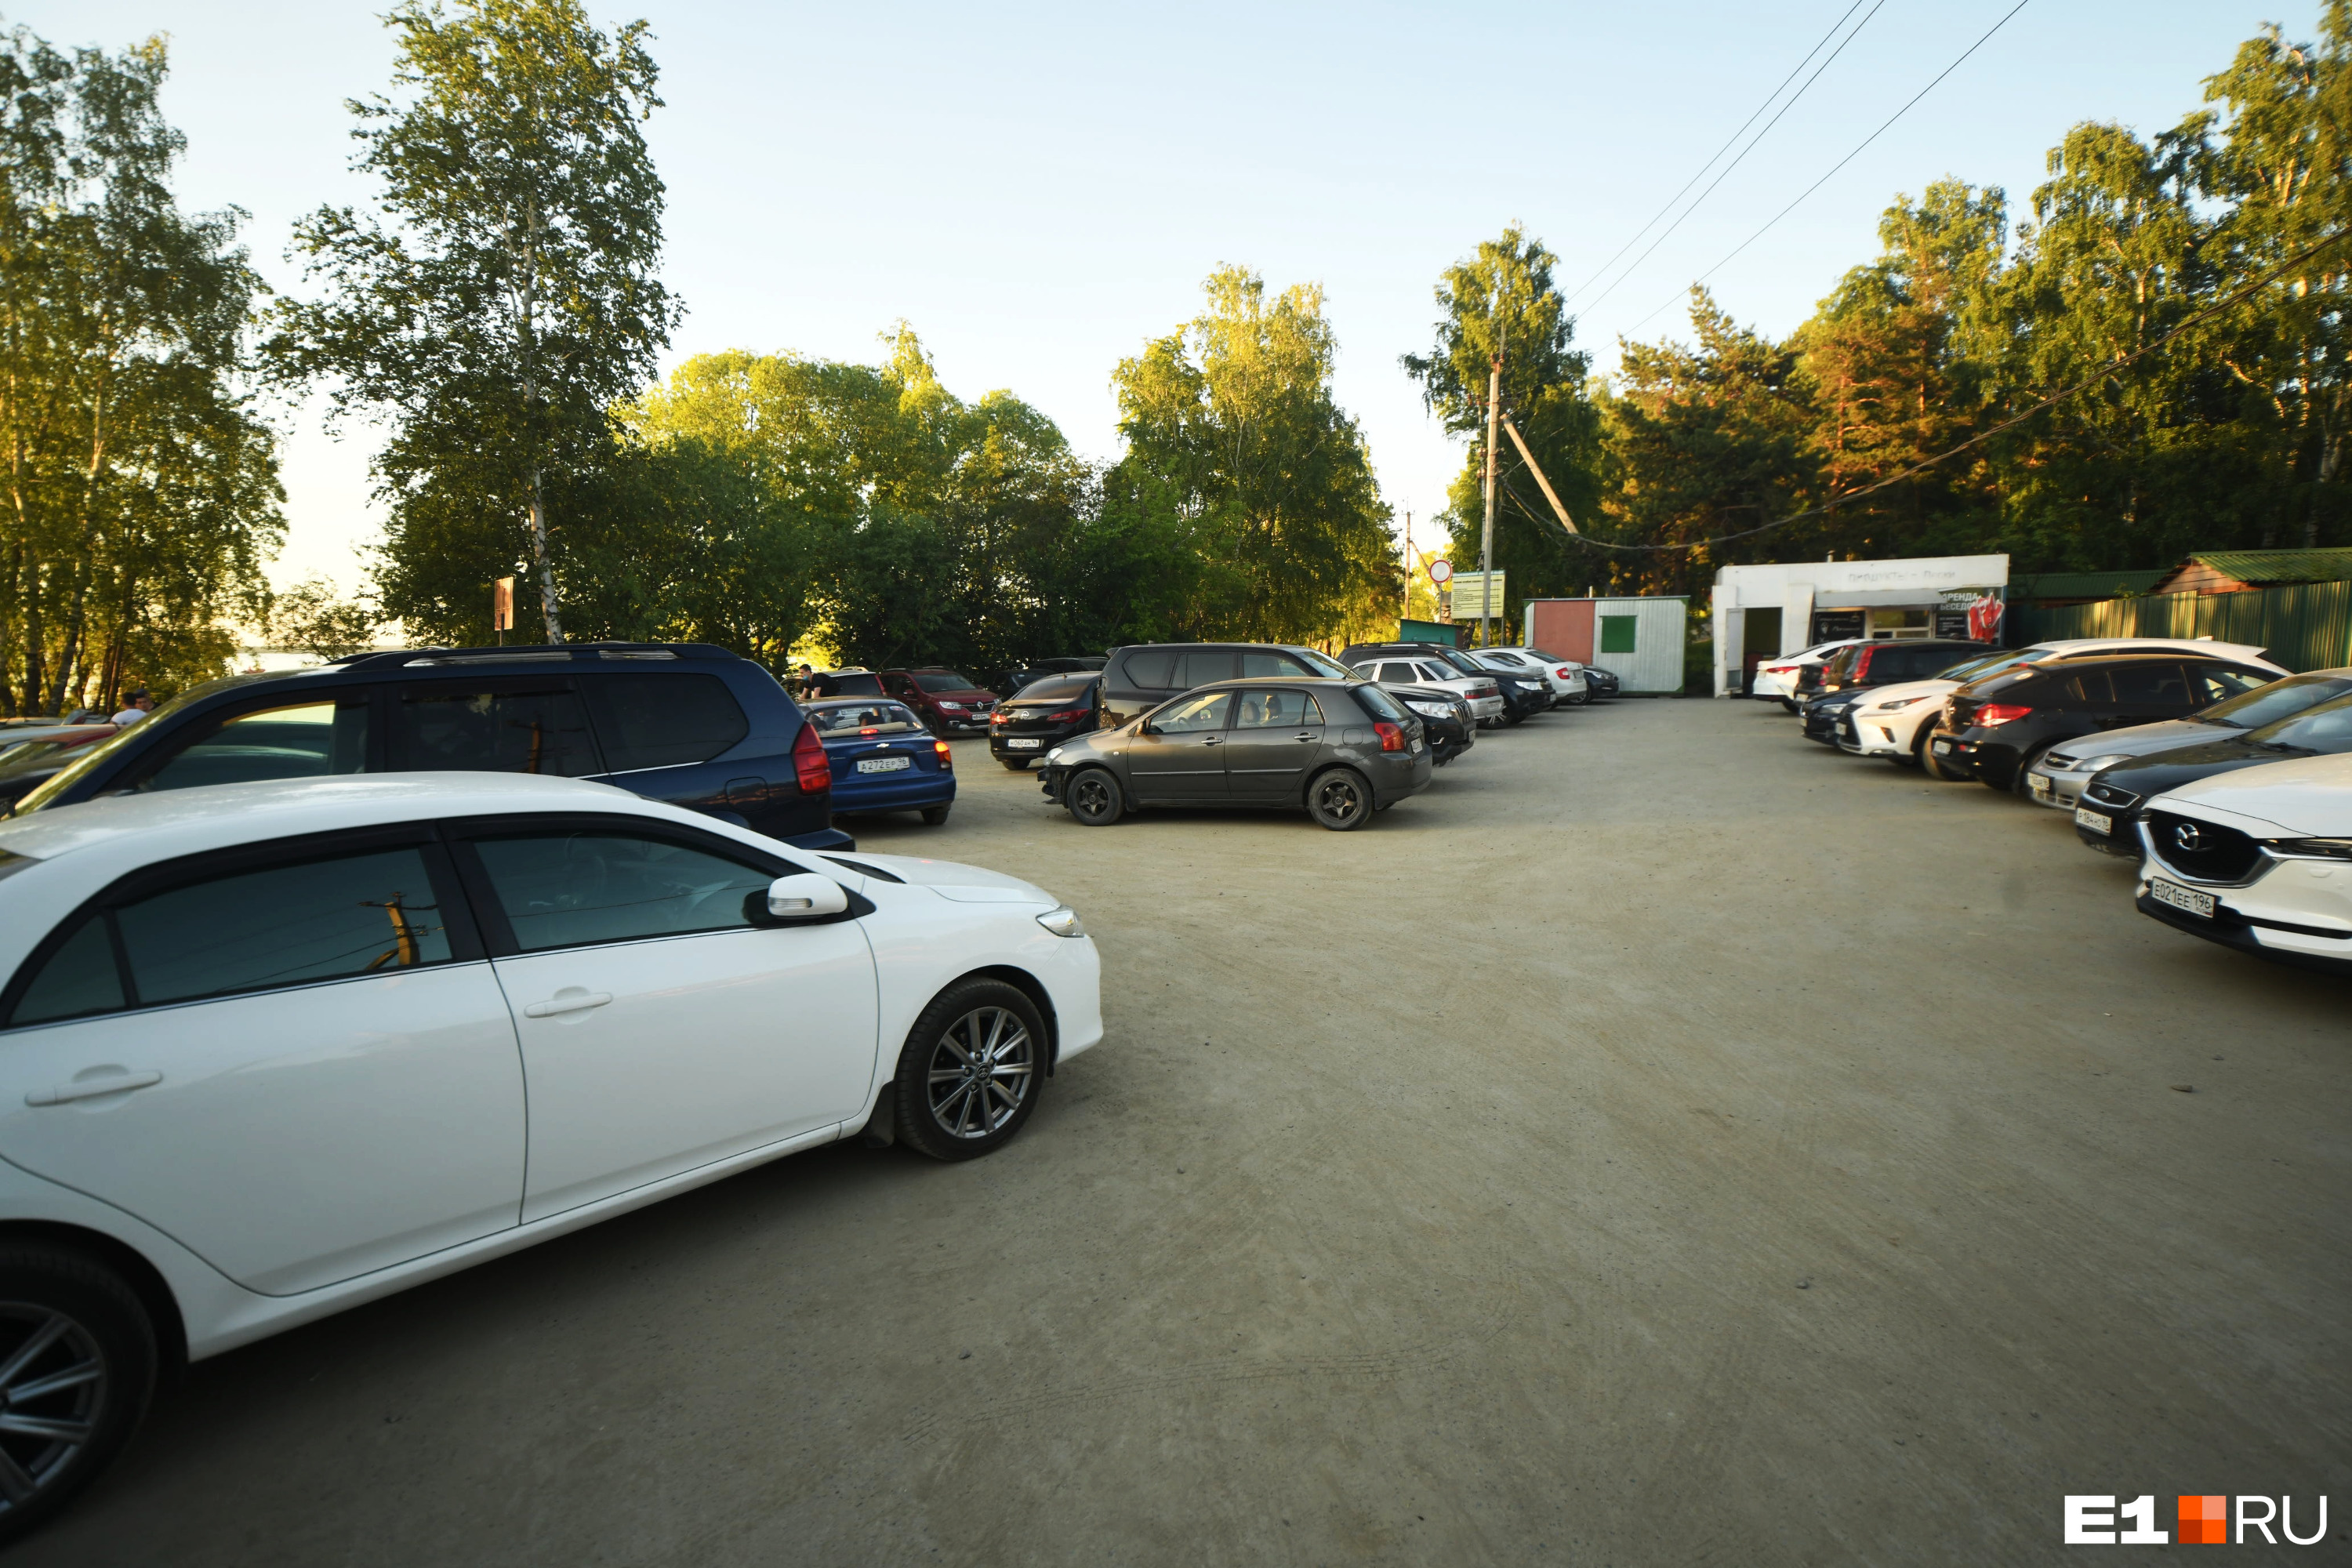 У входа в лесопарк было припарковано много машин